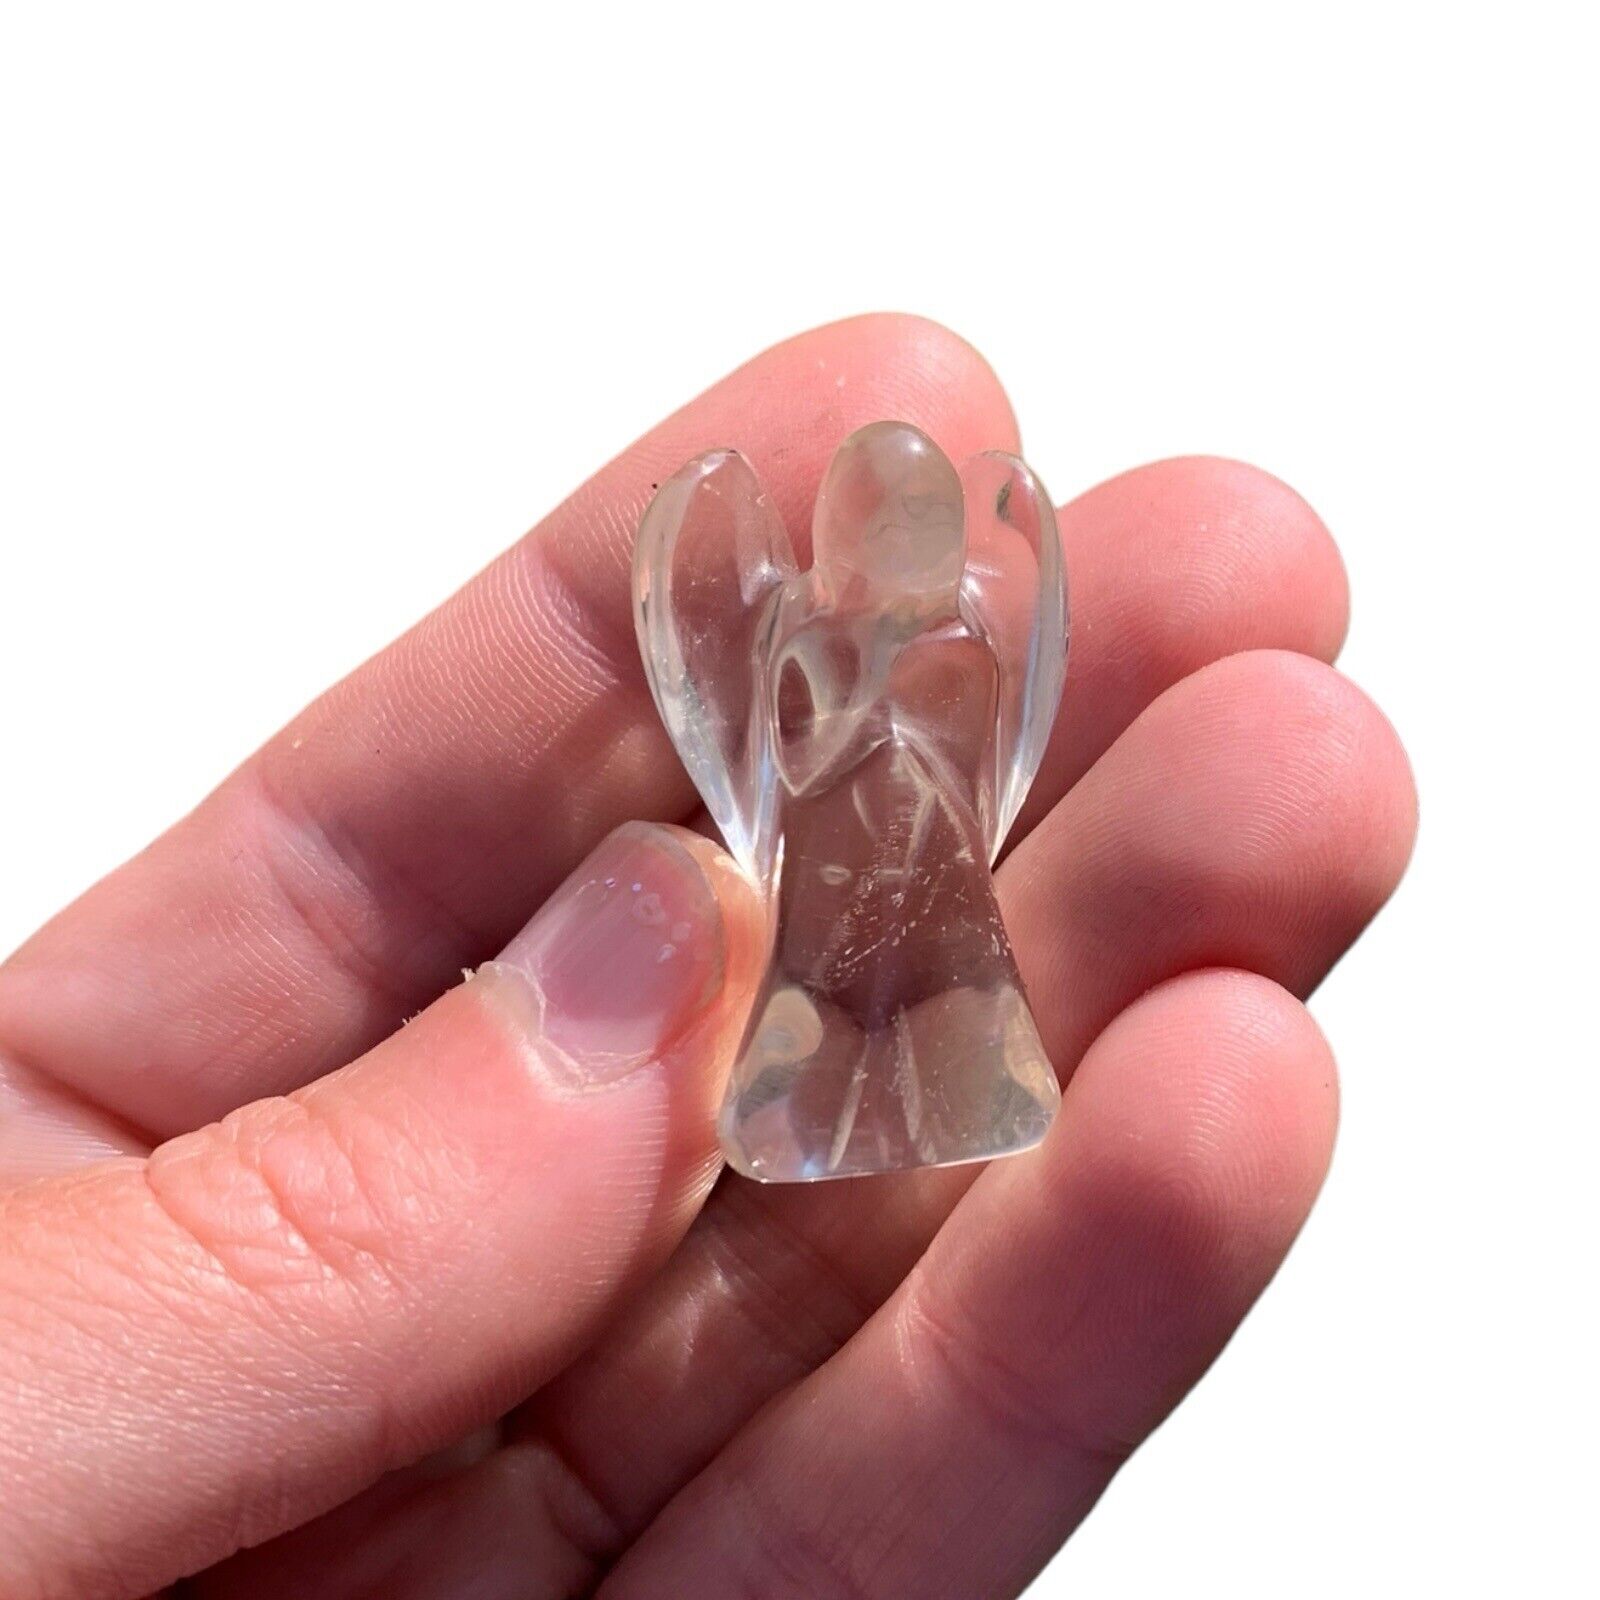 14g Natural Clear Quartz Carved Crystal Angel Reiki Healing 1pc Pocket Crystal